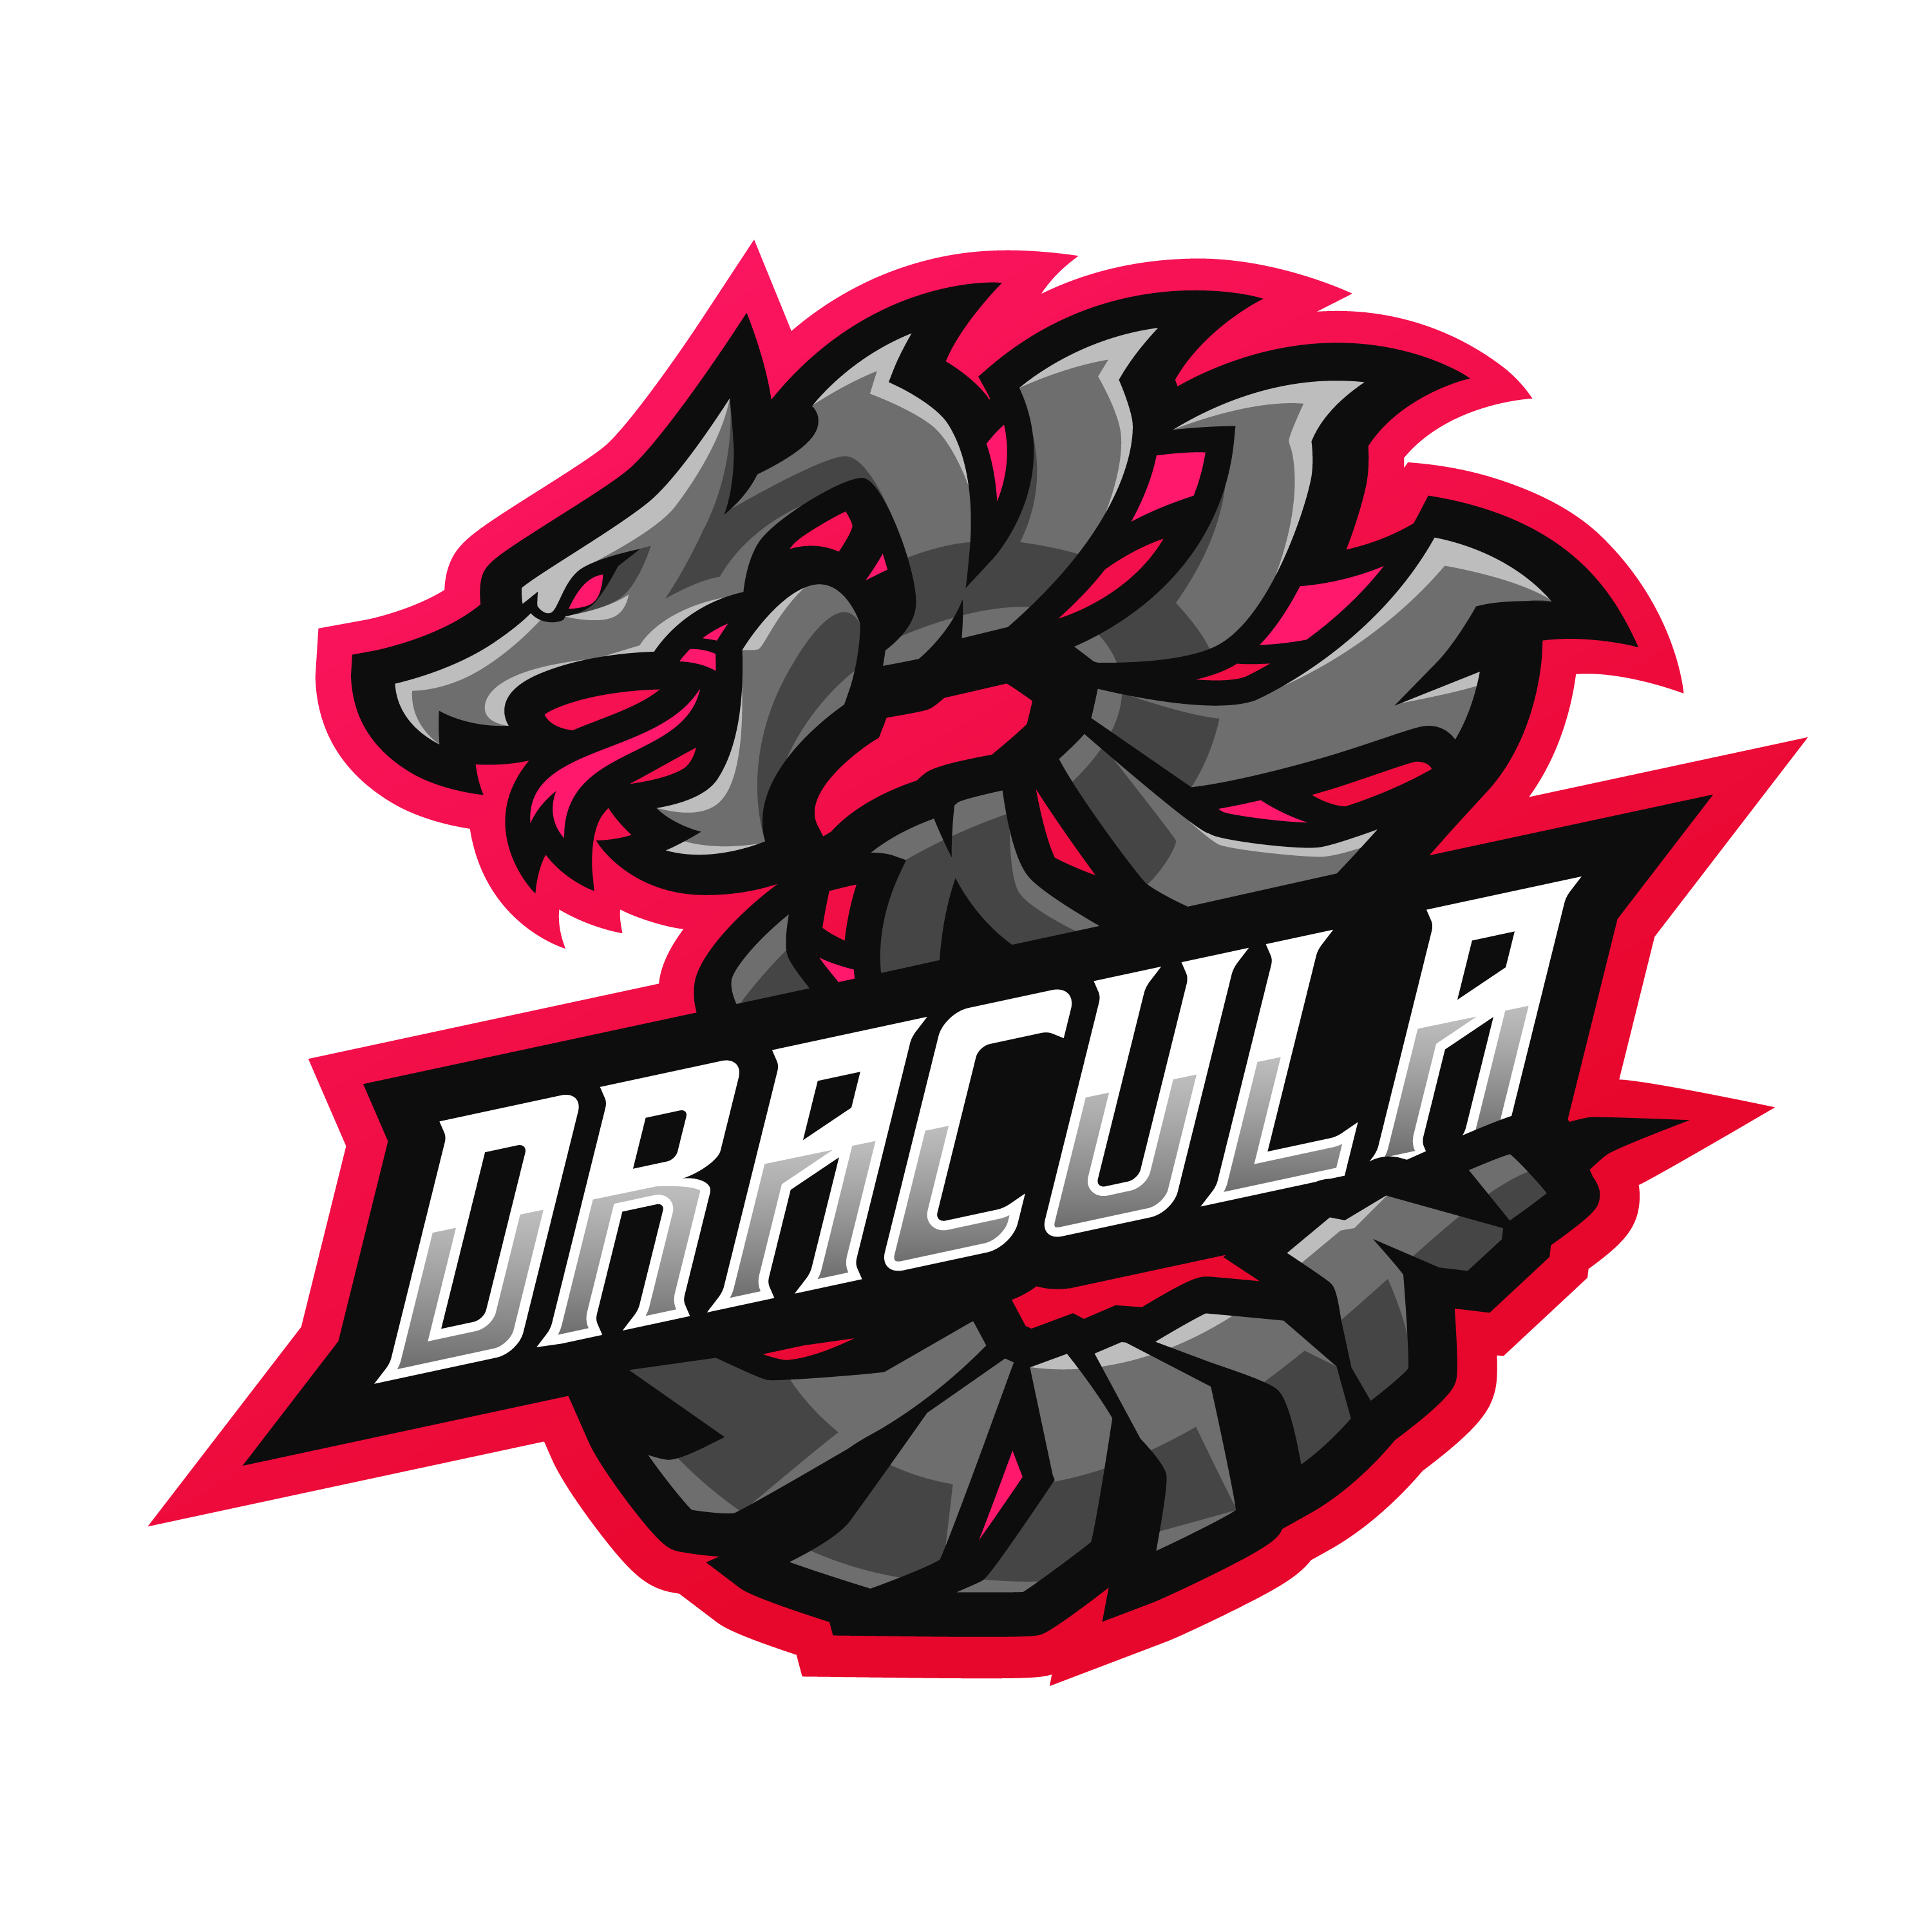 Dracula Gaming Logo Template